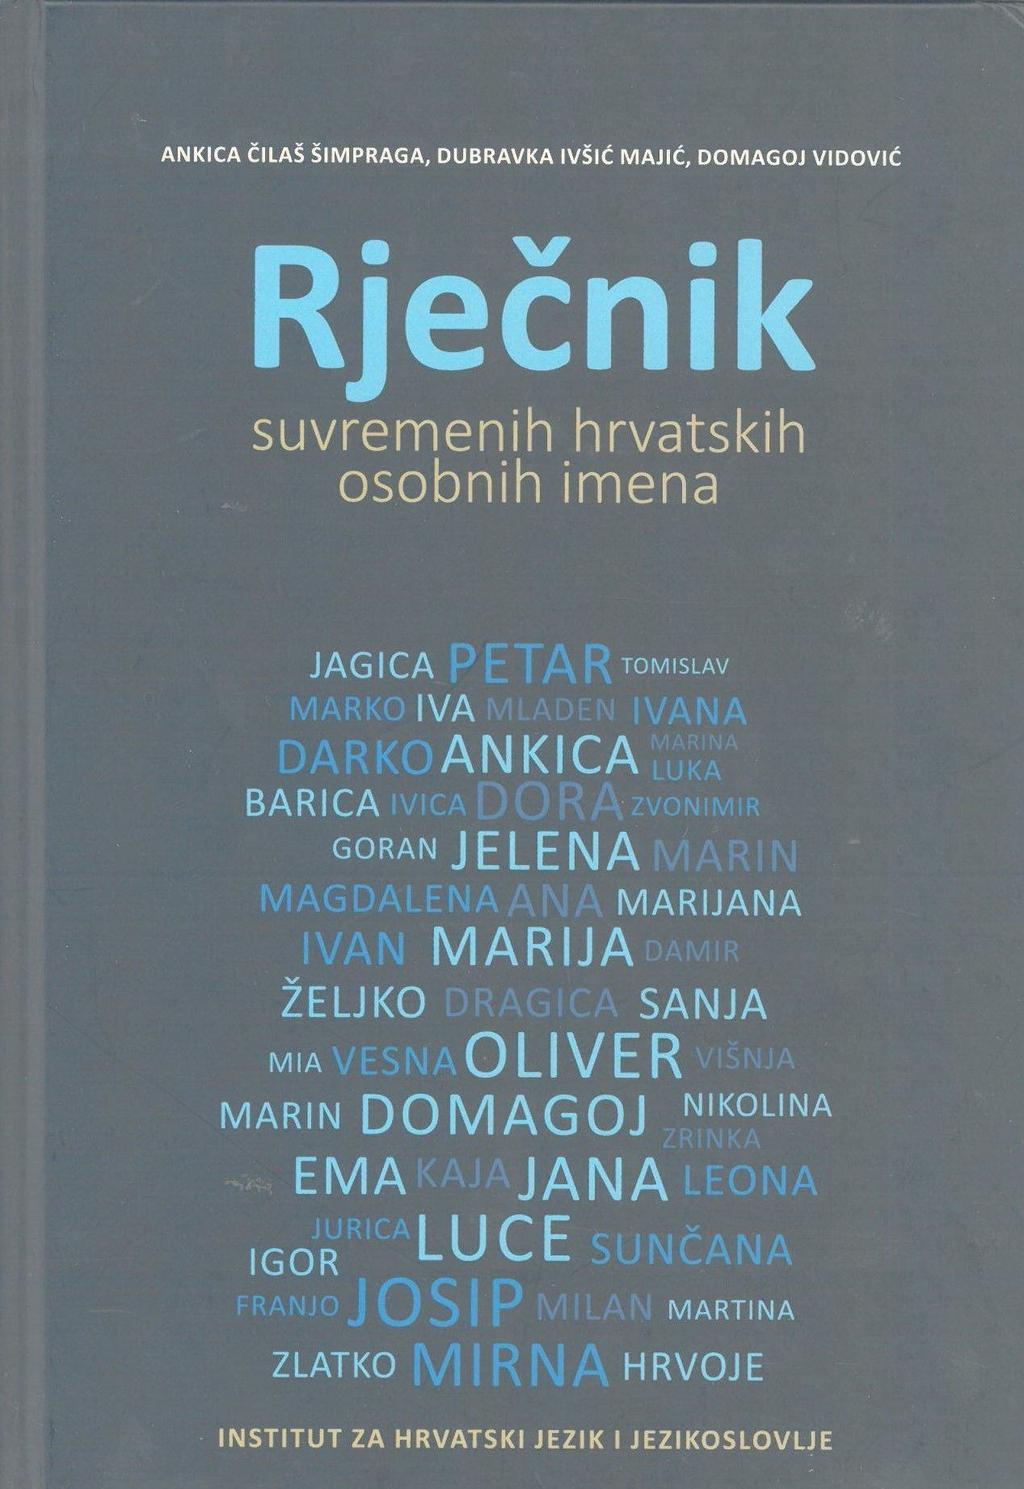 Rječnik suvremenih hrvatskih osobnih imena prvi je hrvatski opći rječnik osobnih imena napravljen prema suvremenim zahtjevima onomastičke struke.